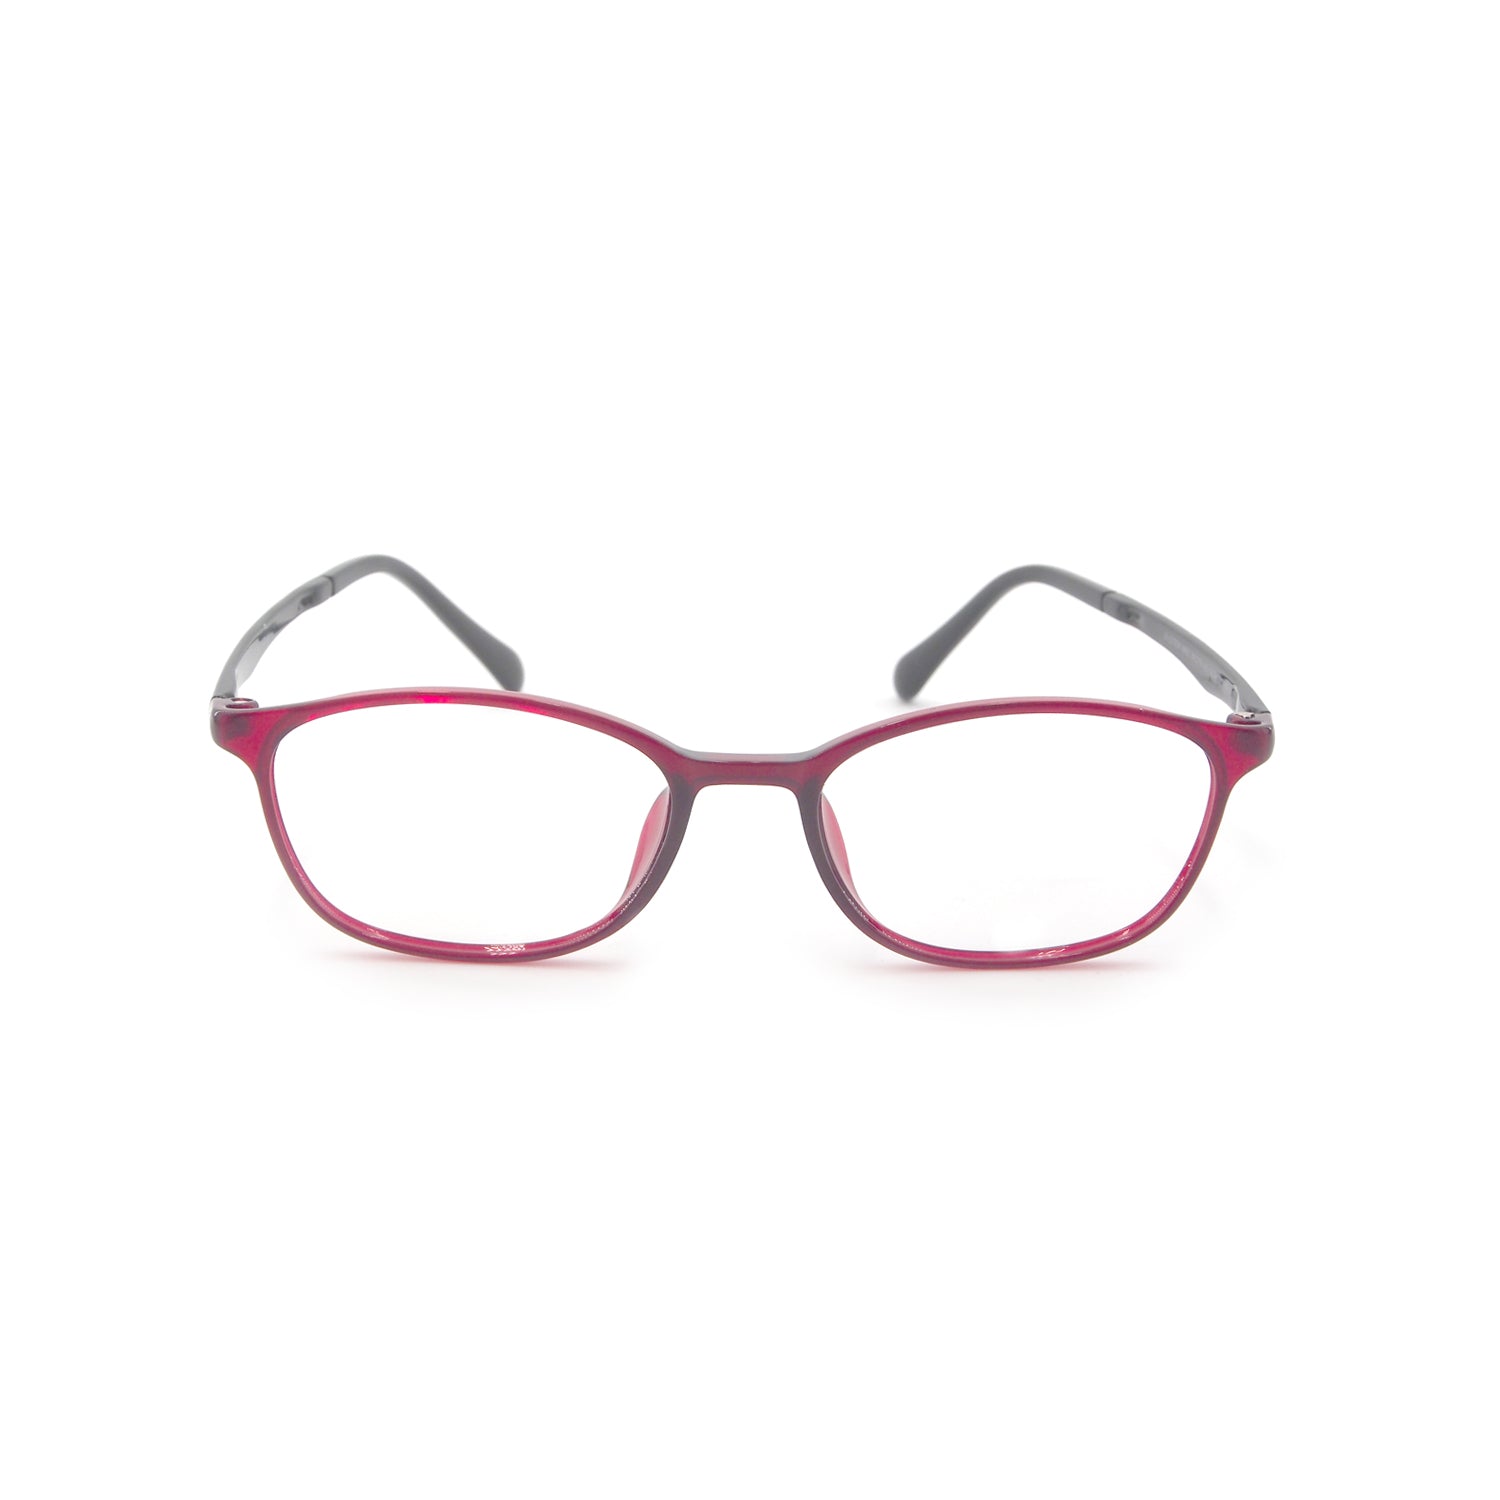 Awen in Scarlet Mirage Eyeglasses - sightonomy